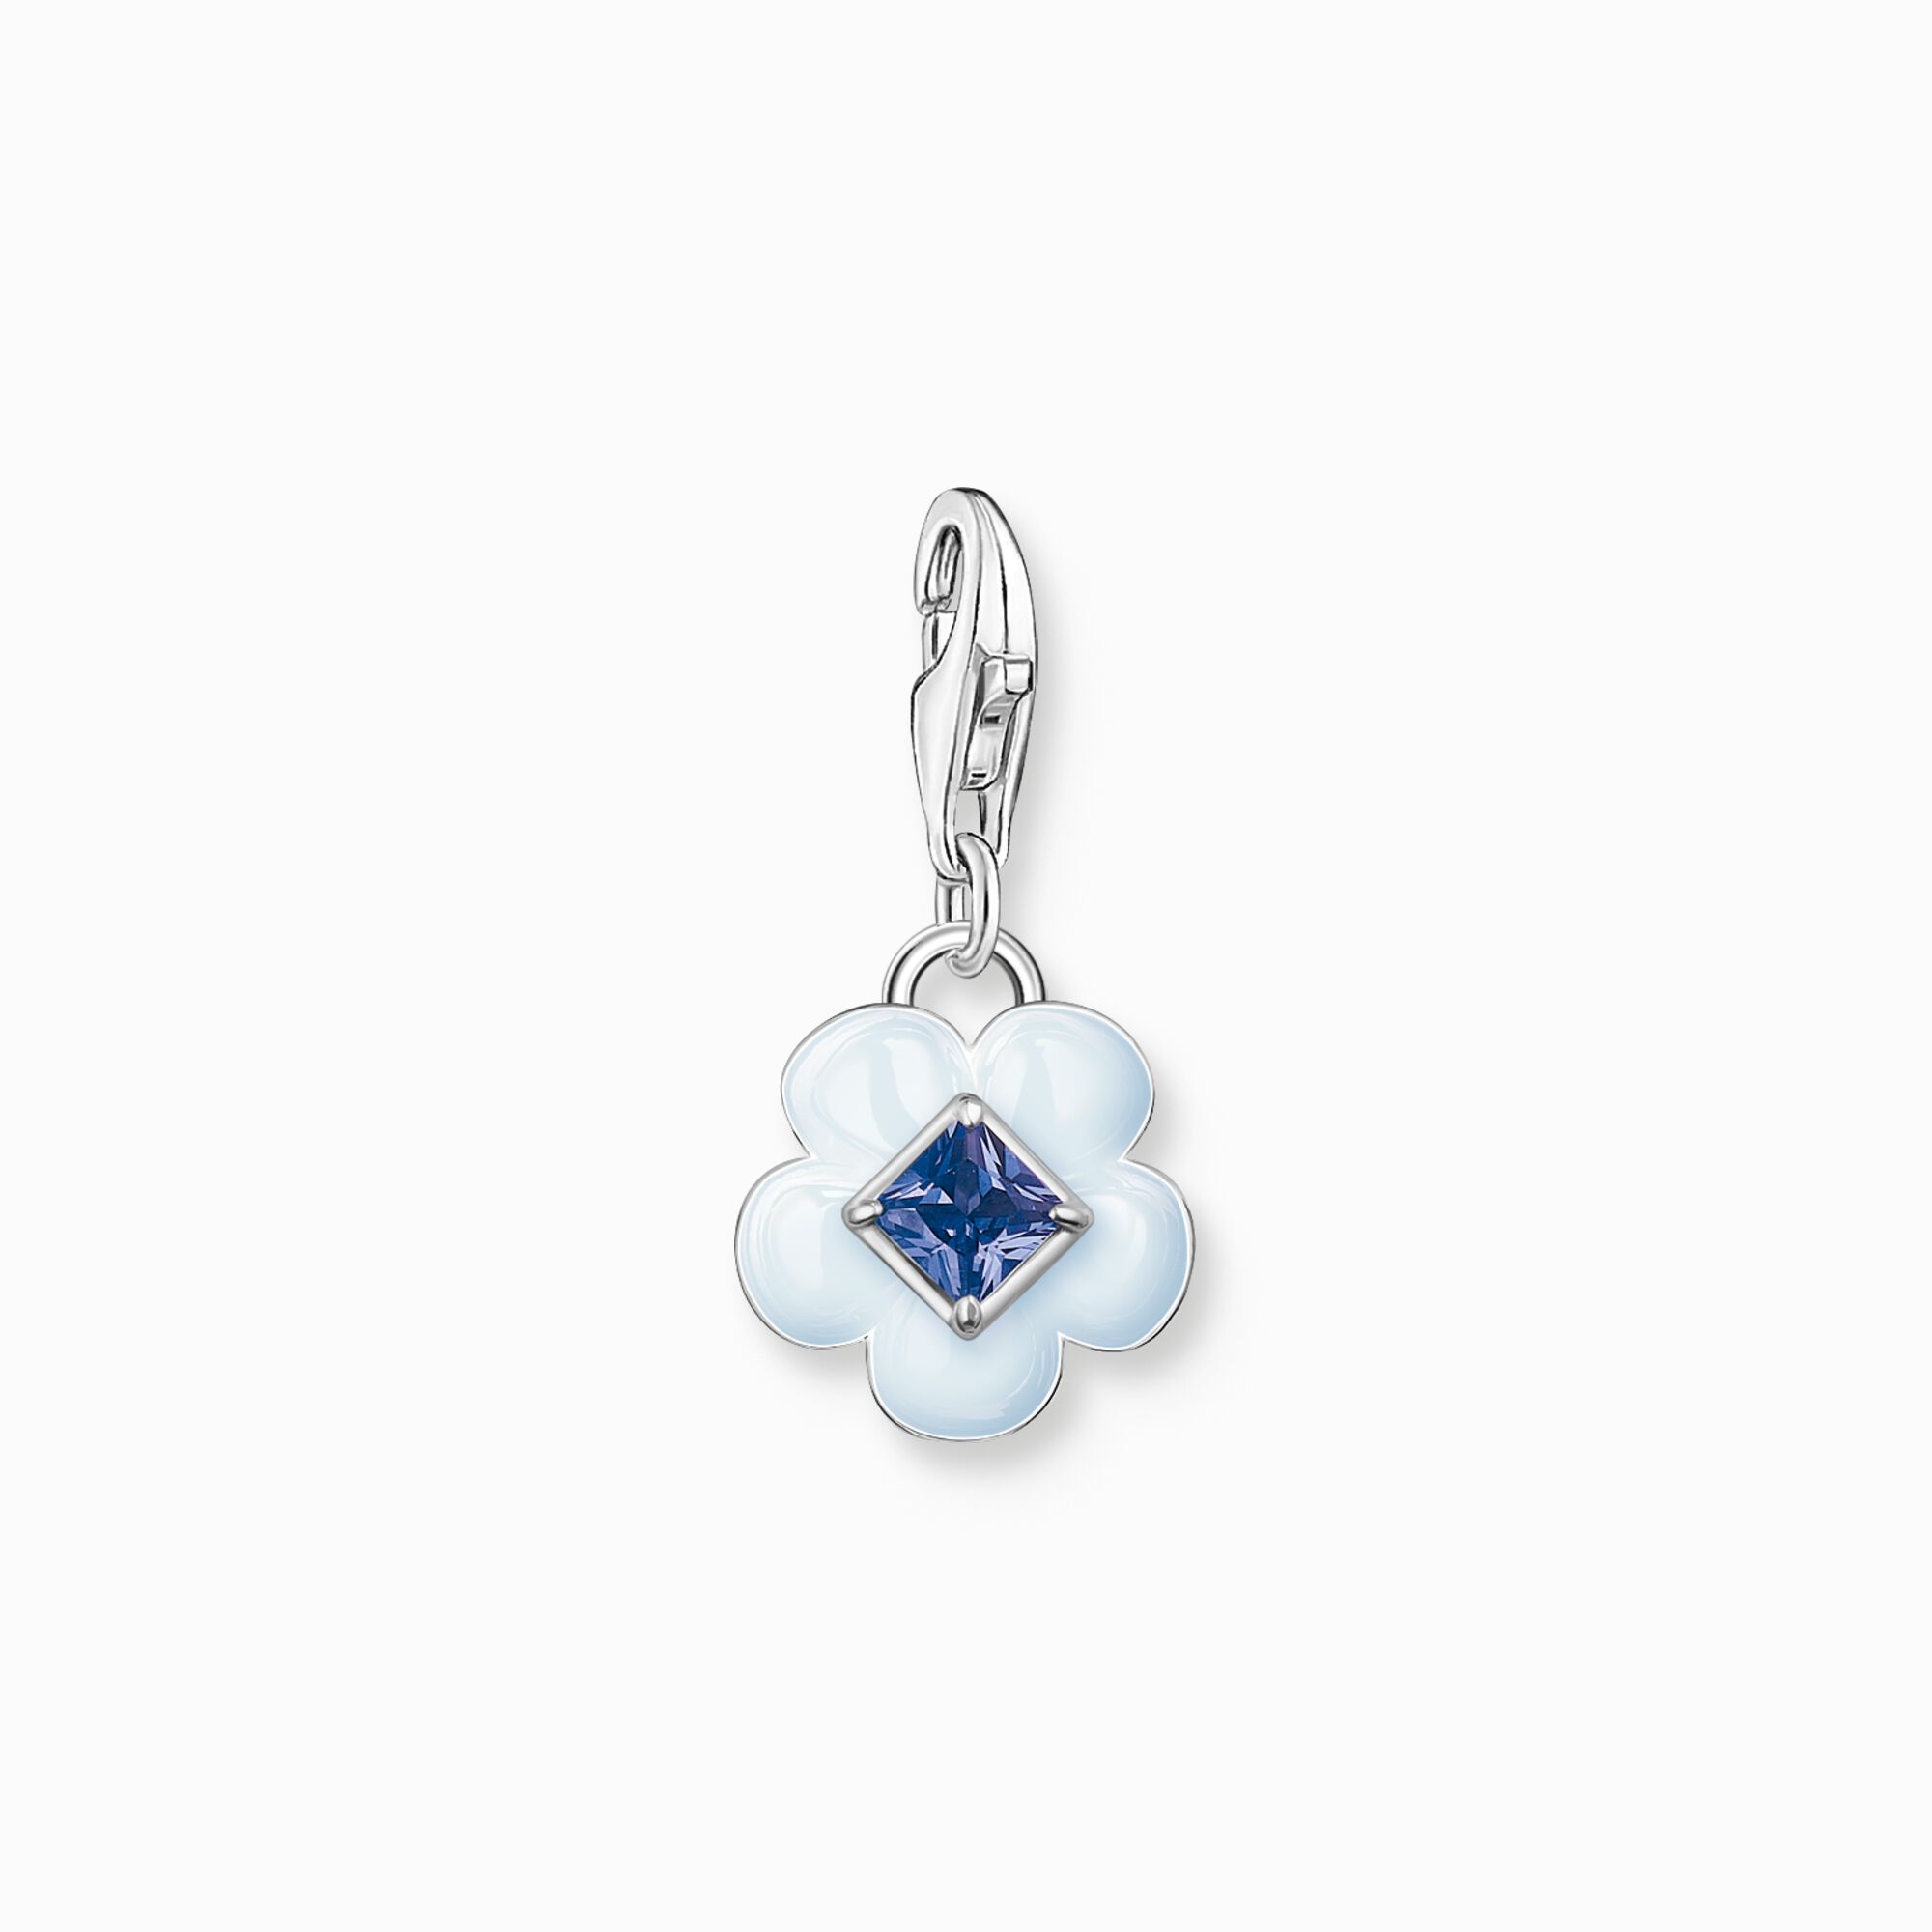 Colgante Charm flor con piedra azul plata de la colección Charm Club en la tienda online de THOMAS SABO